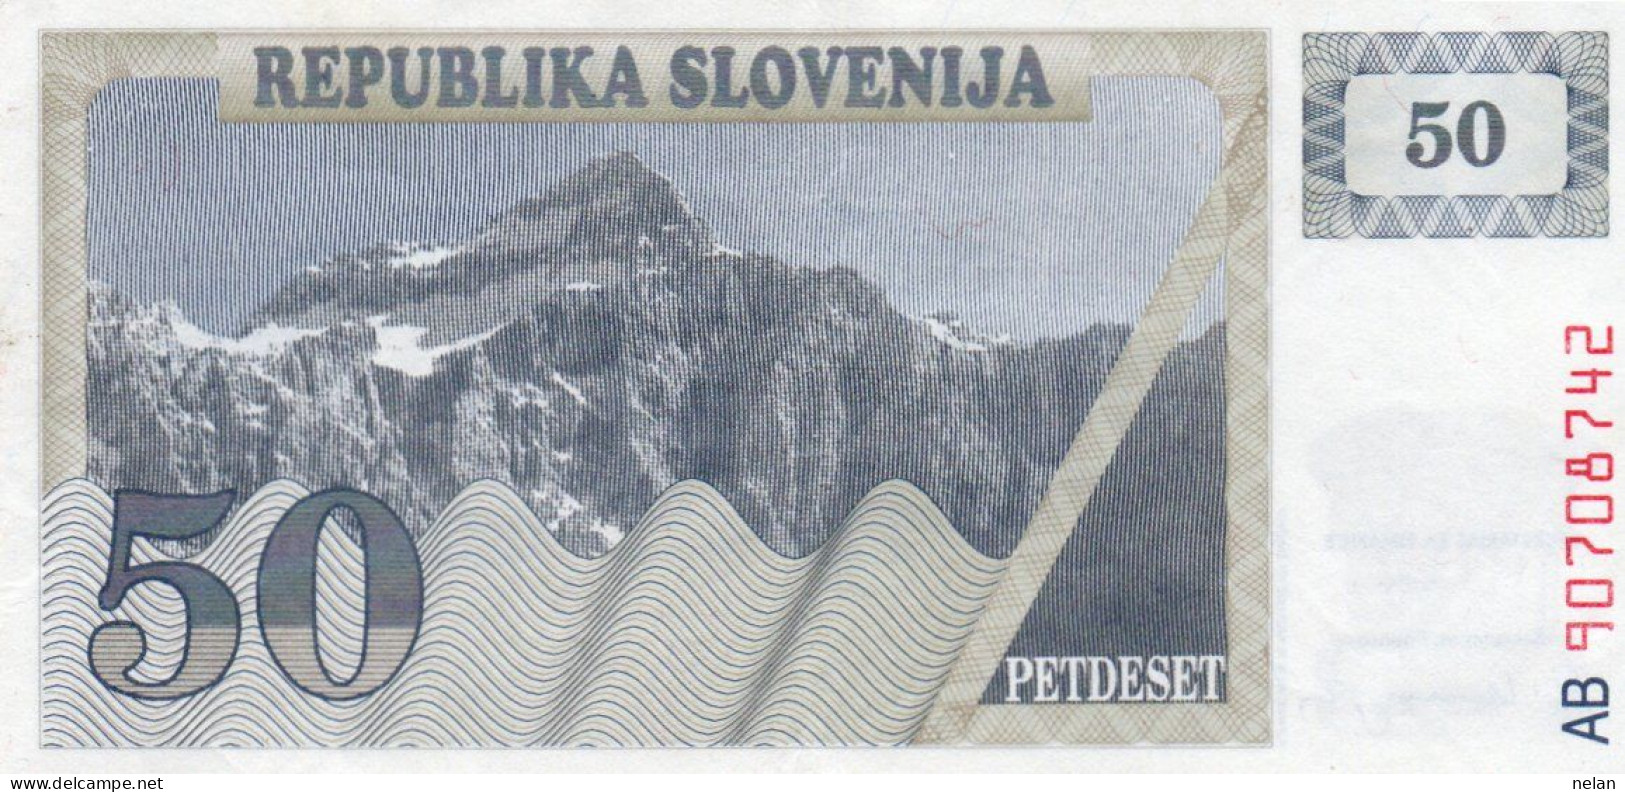 SLOVENIA 50 TOLARJEV 1990 P-5a  XF PREFIX AB - Slovénie